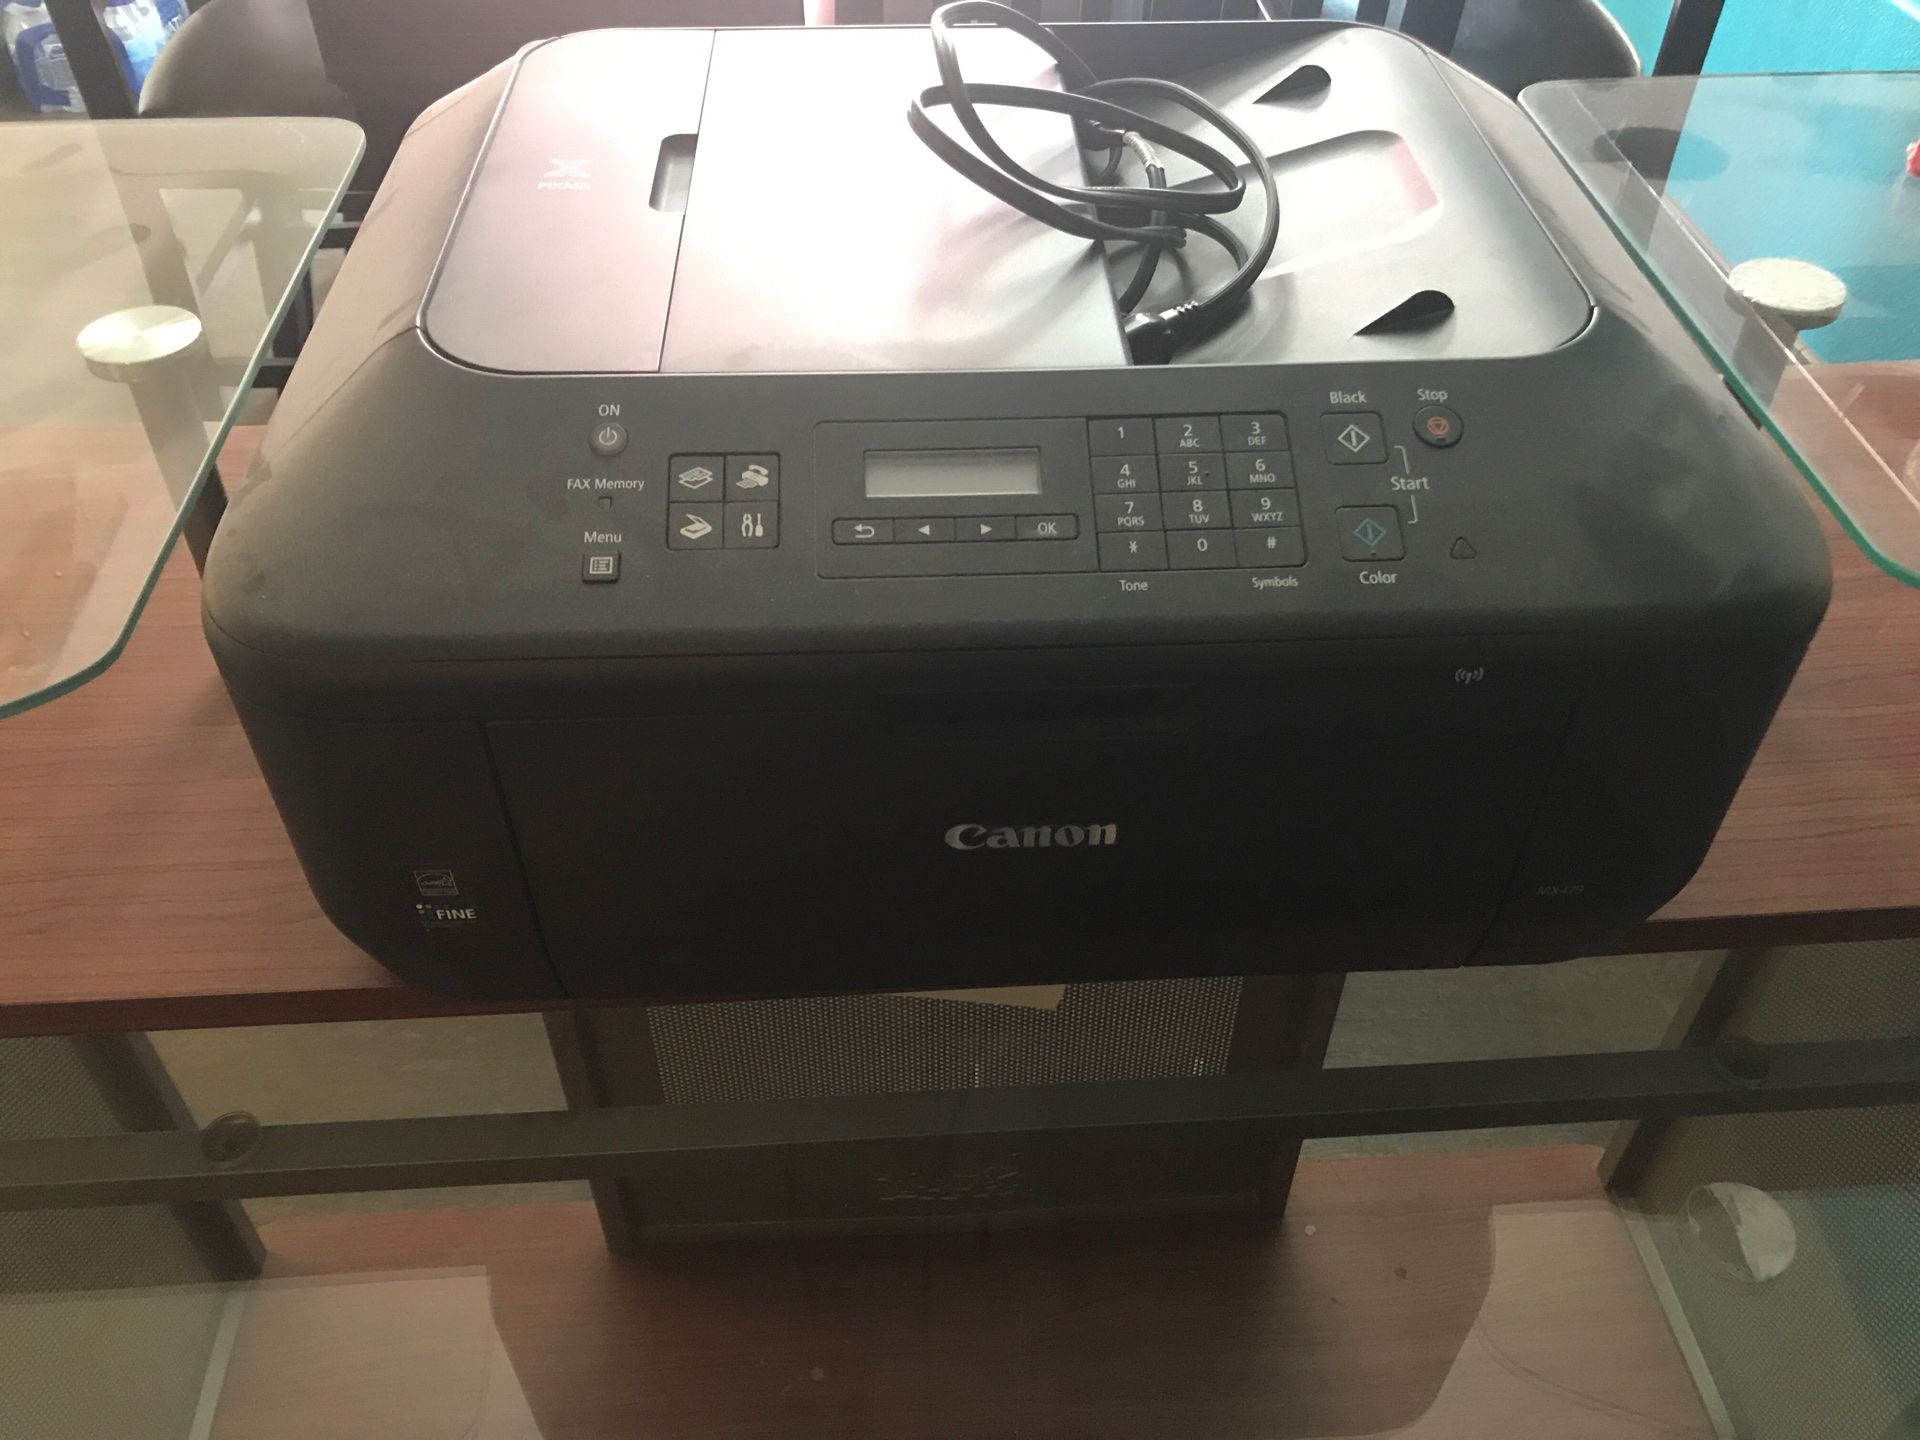 Computer desk and Canon printer